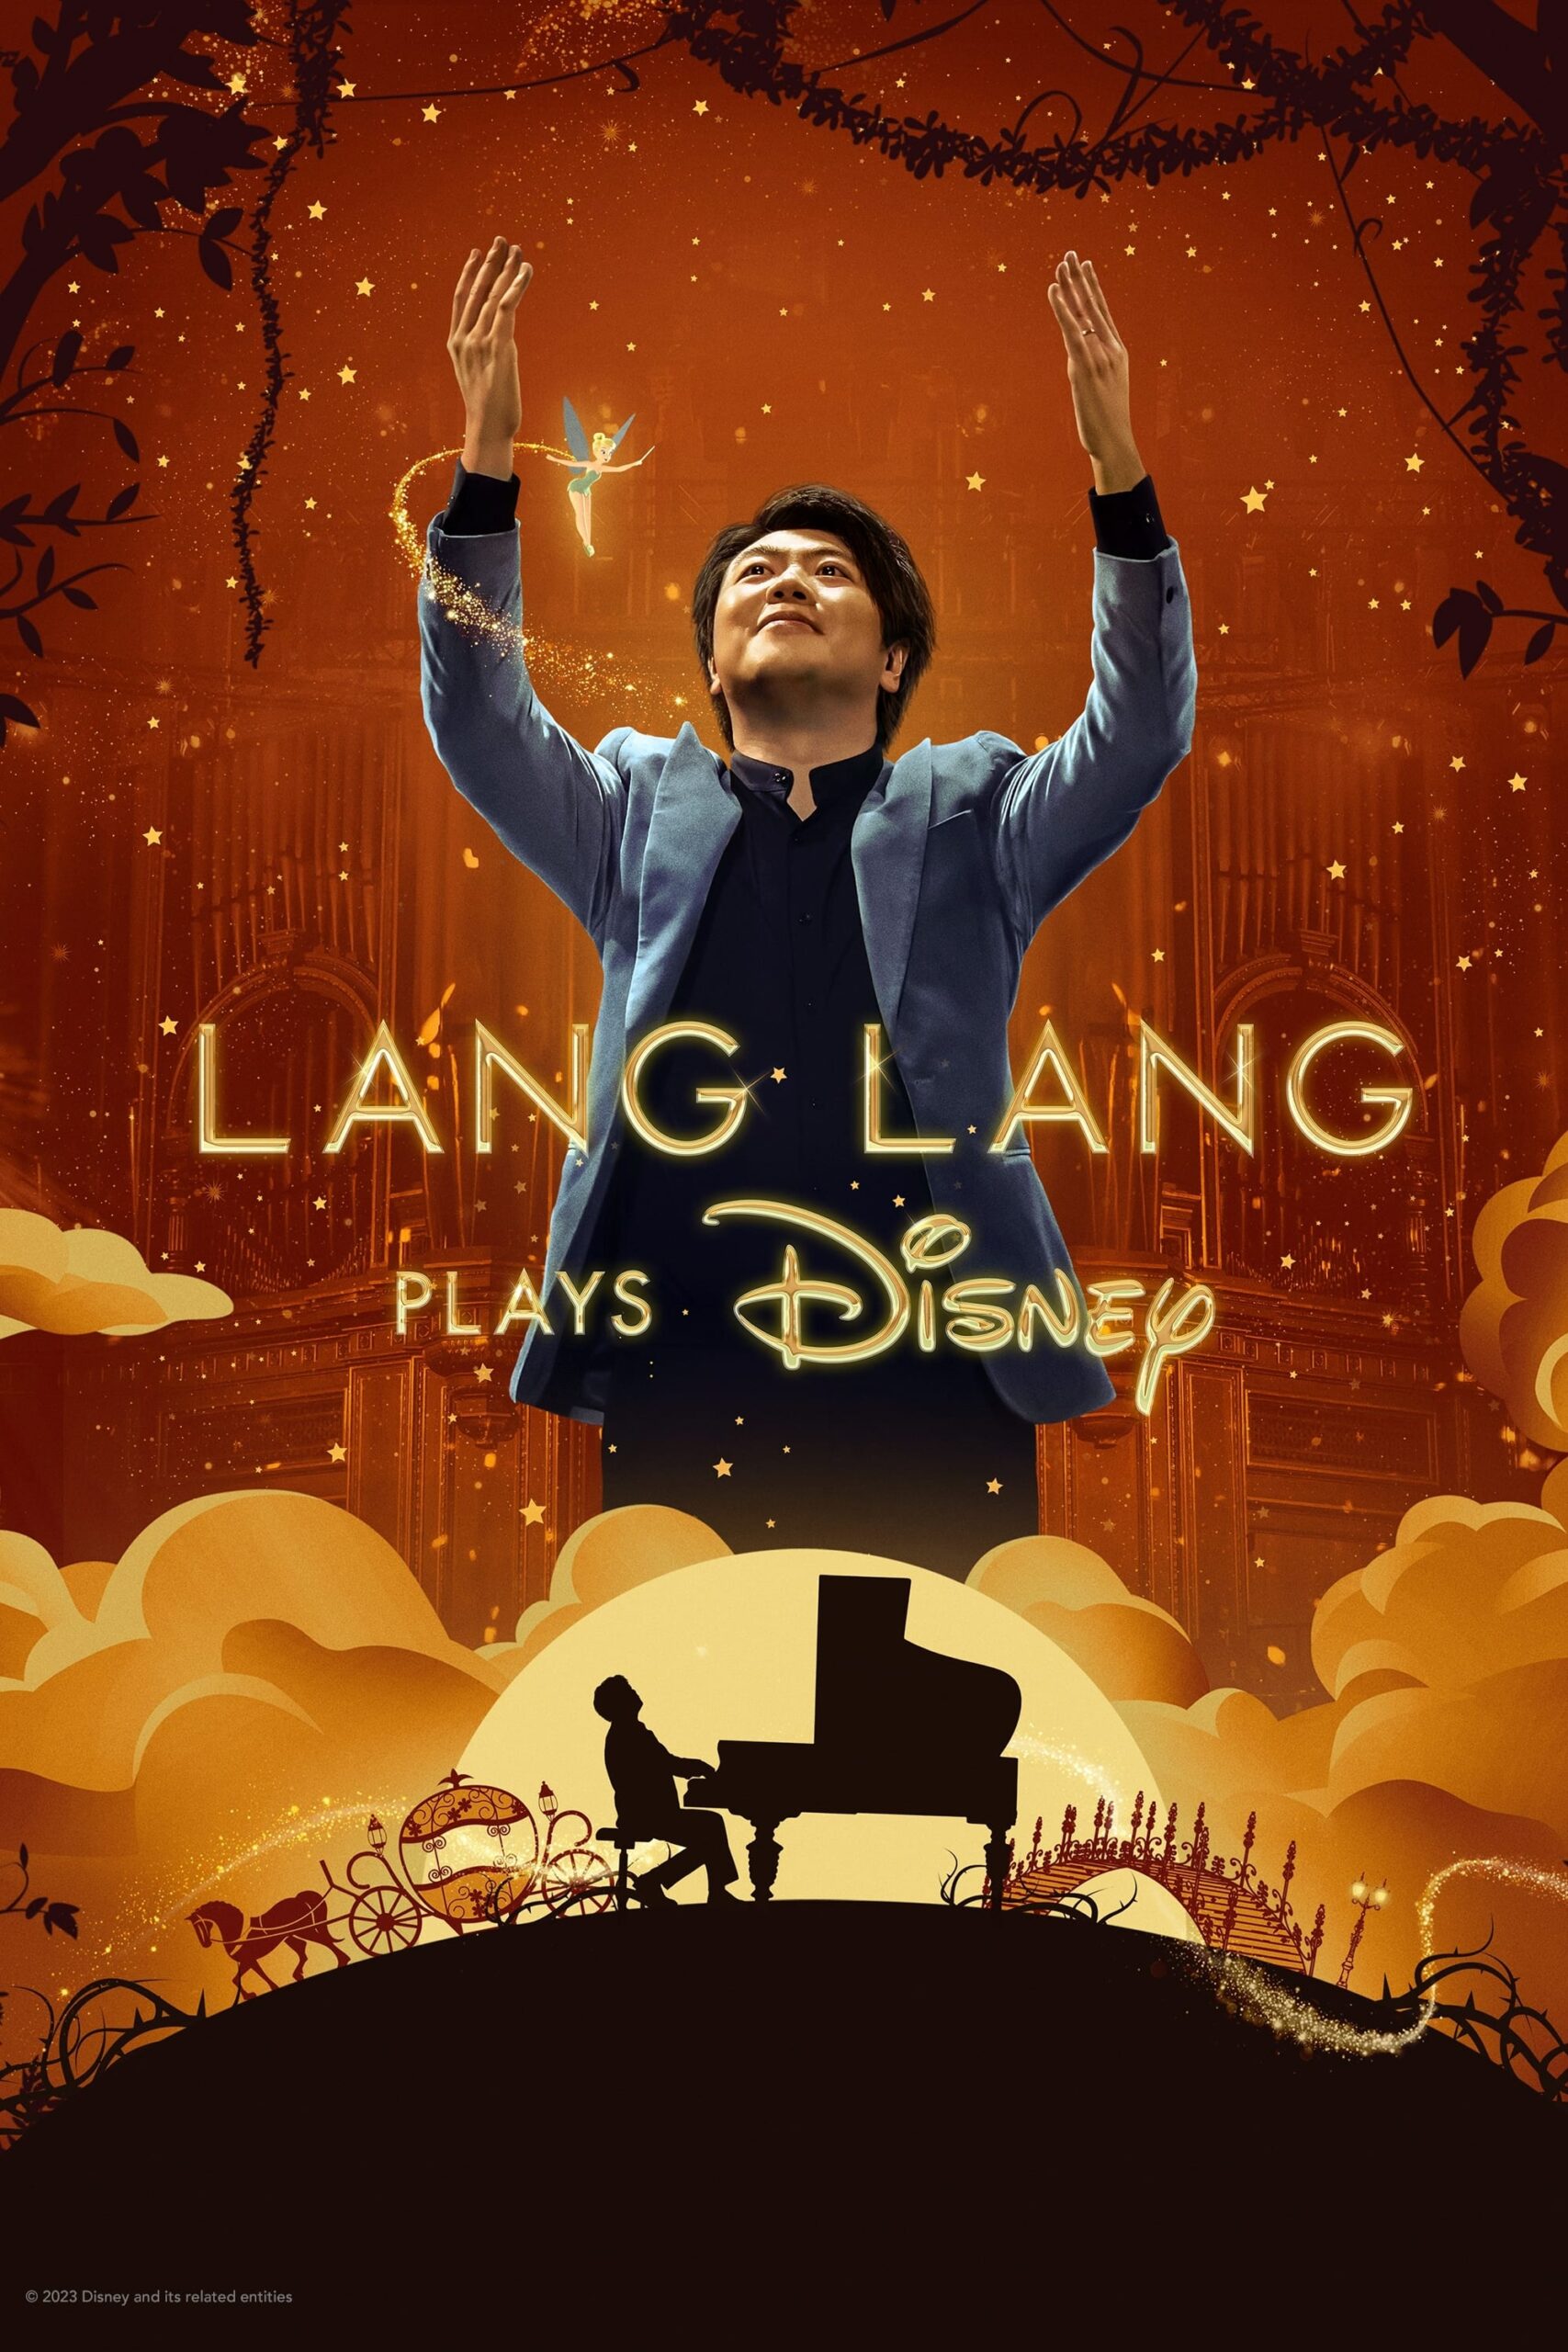 لانگ لانگ موسیقی دیزنی را می نوازد (Lang Lang Plays Disney)